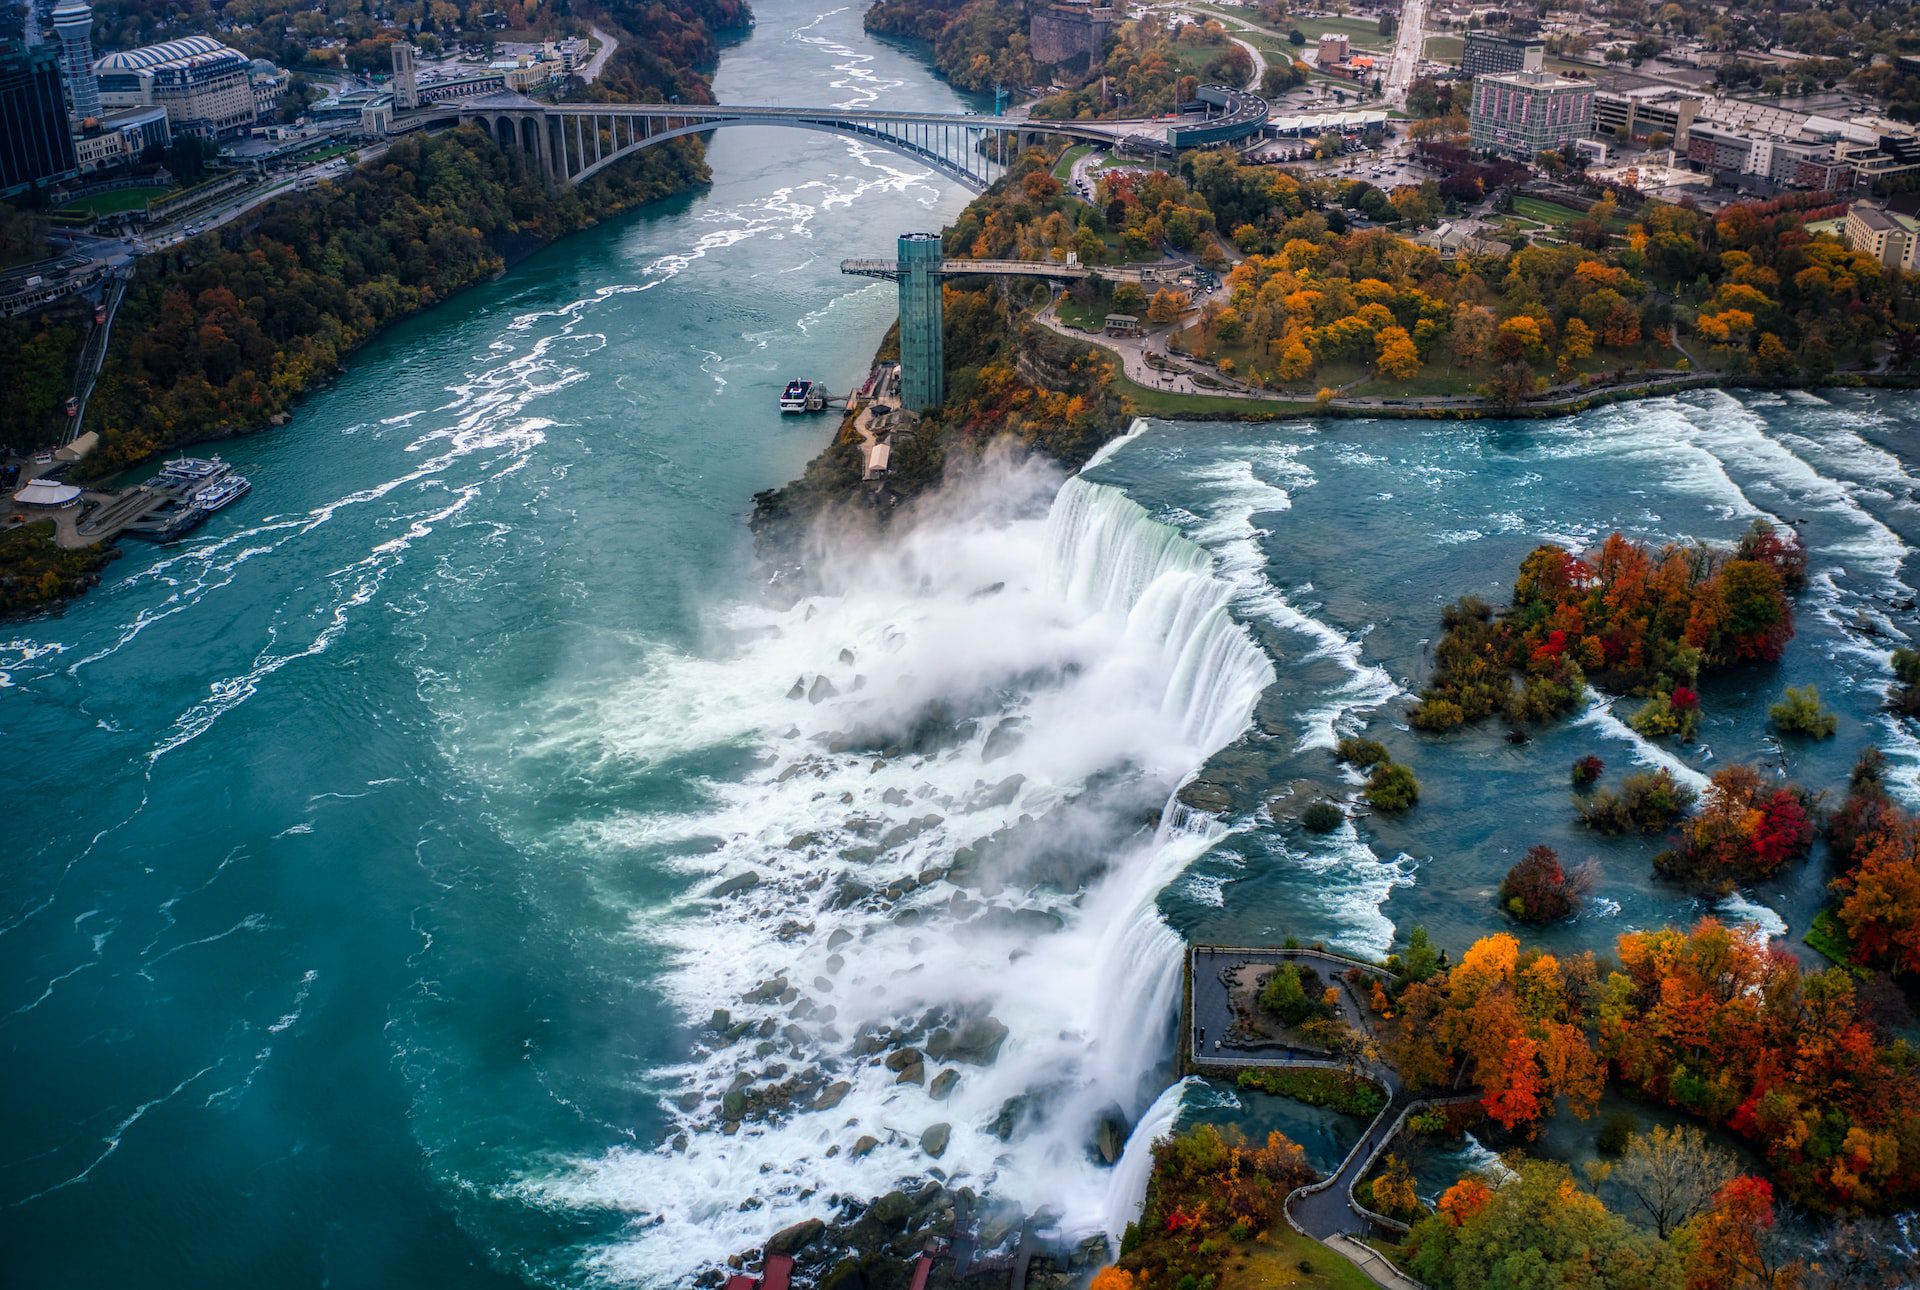 Day 7: Pittsburgh to Niagara Falls